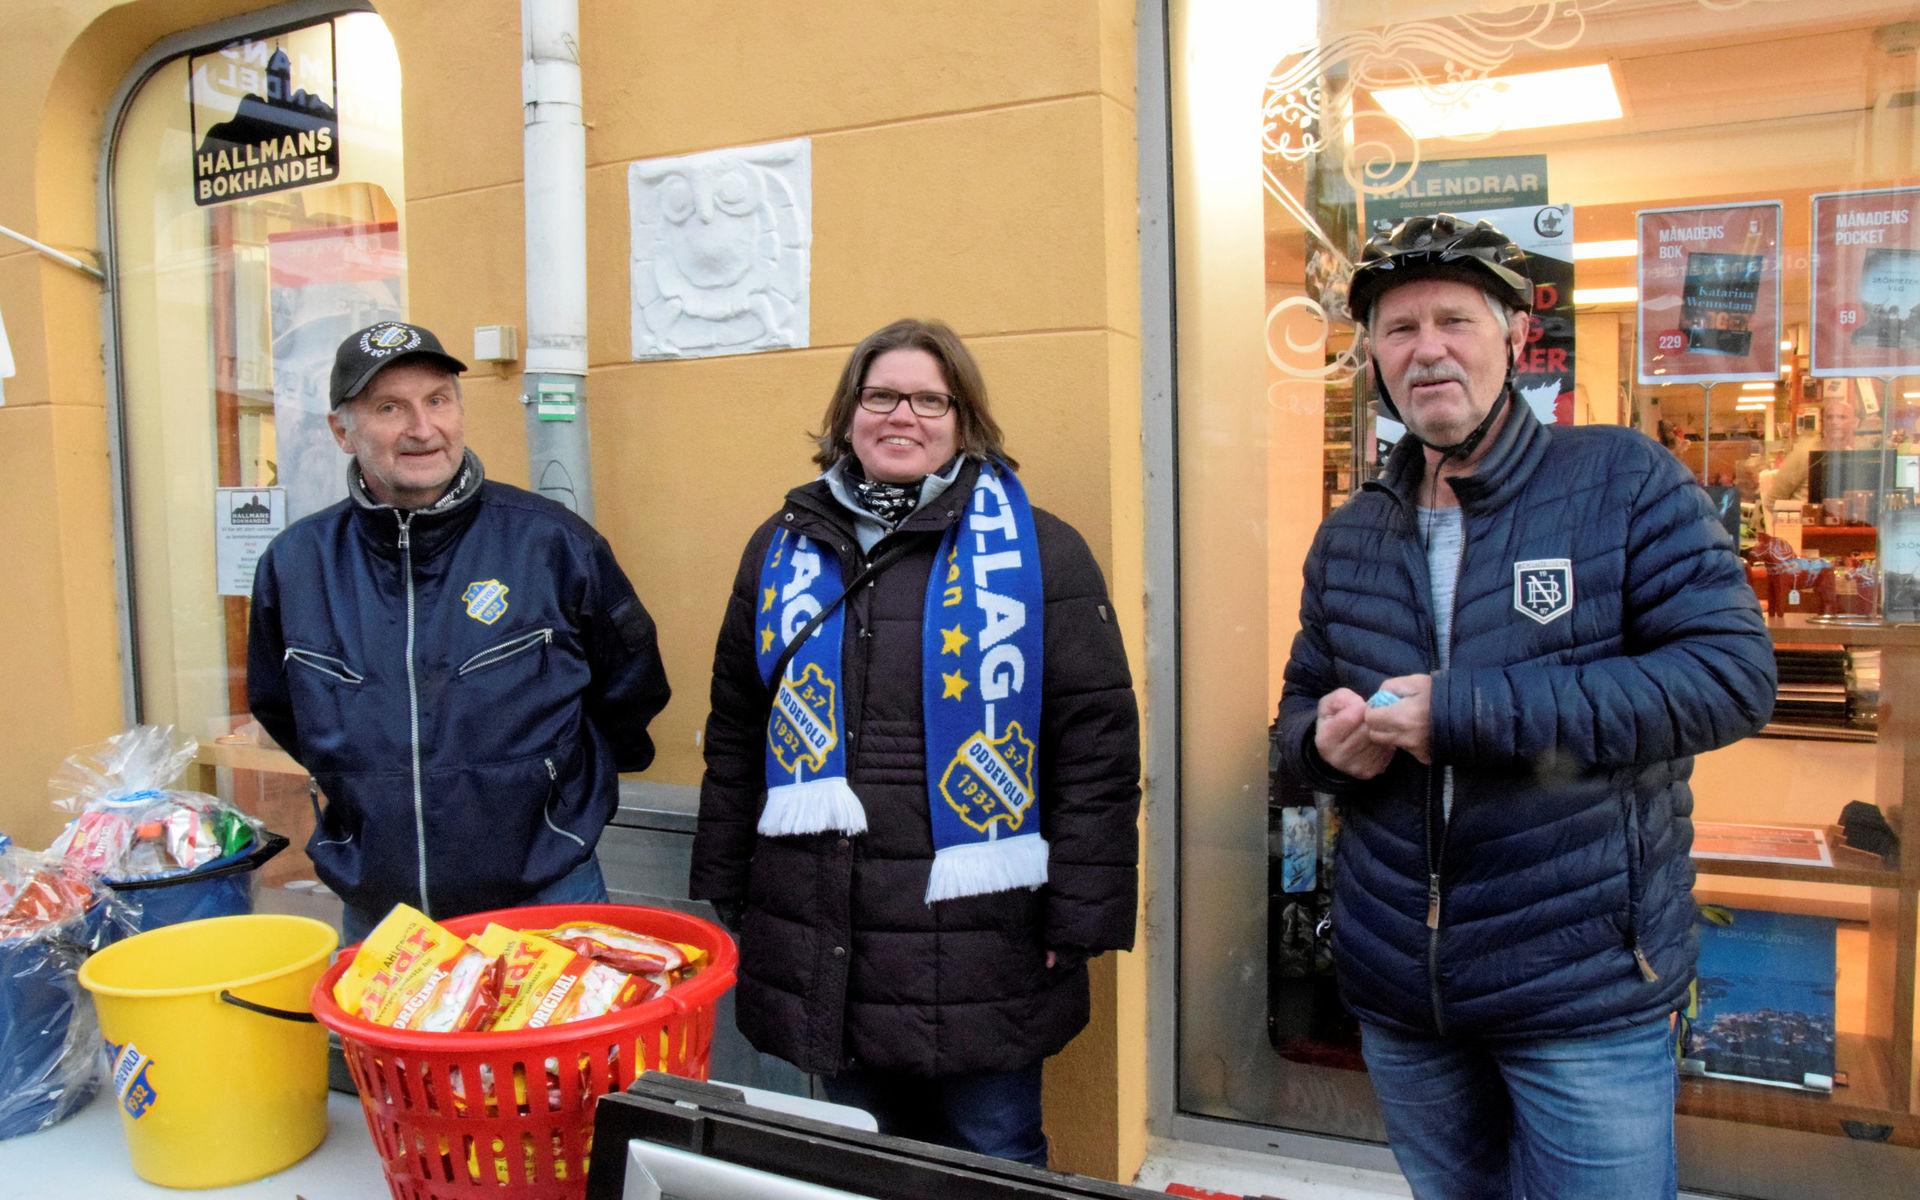 Bert Nestorsson, Susann Sannfjäll och Stellan Sundberg sålde lotter för Oddevolds supporterklubb Bohus bataljon